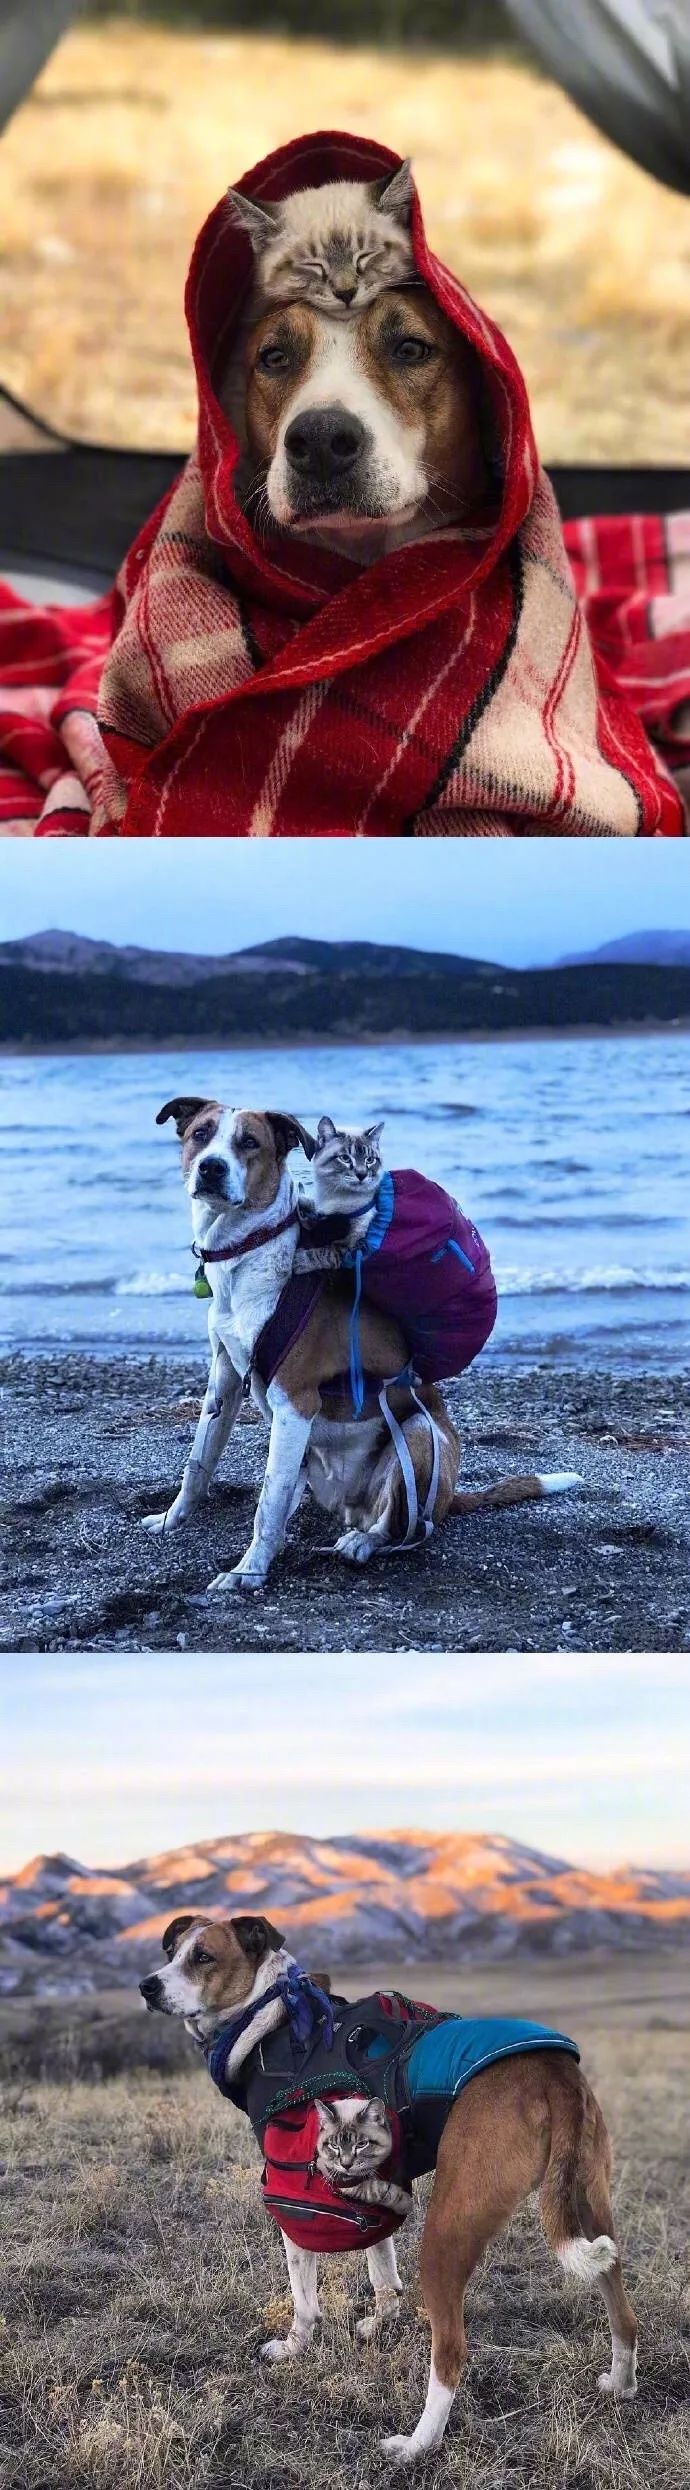 一人、一猫、一狗的徒步旅行，真的是太美好了